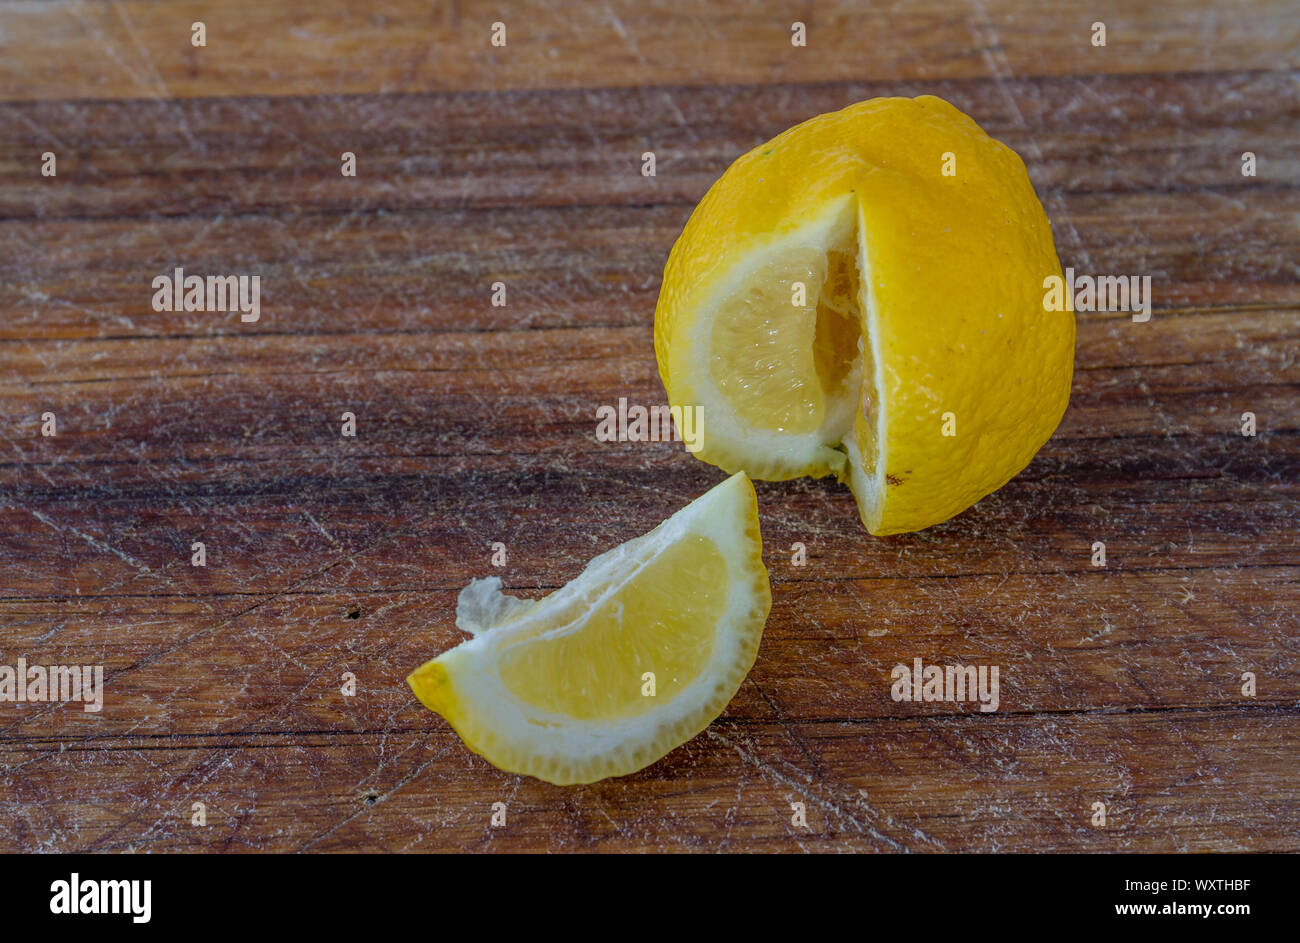 Eine Scheibe Zitrone und den Rest der Frucht auf einer hölzernen Oberfläche Bild mit Kopie Raum isoliert Stockfoto